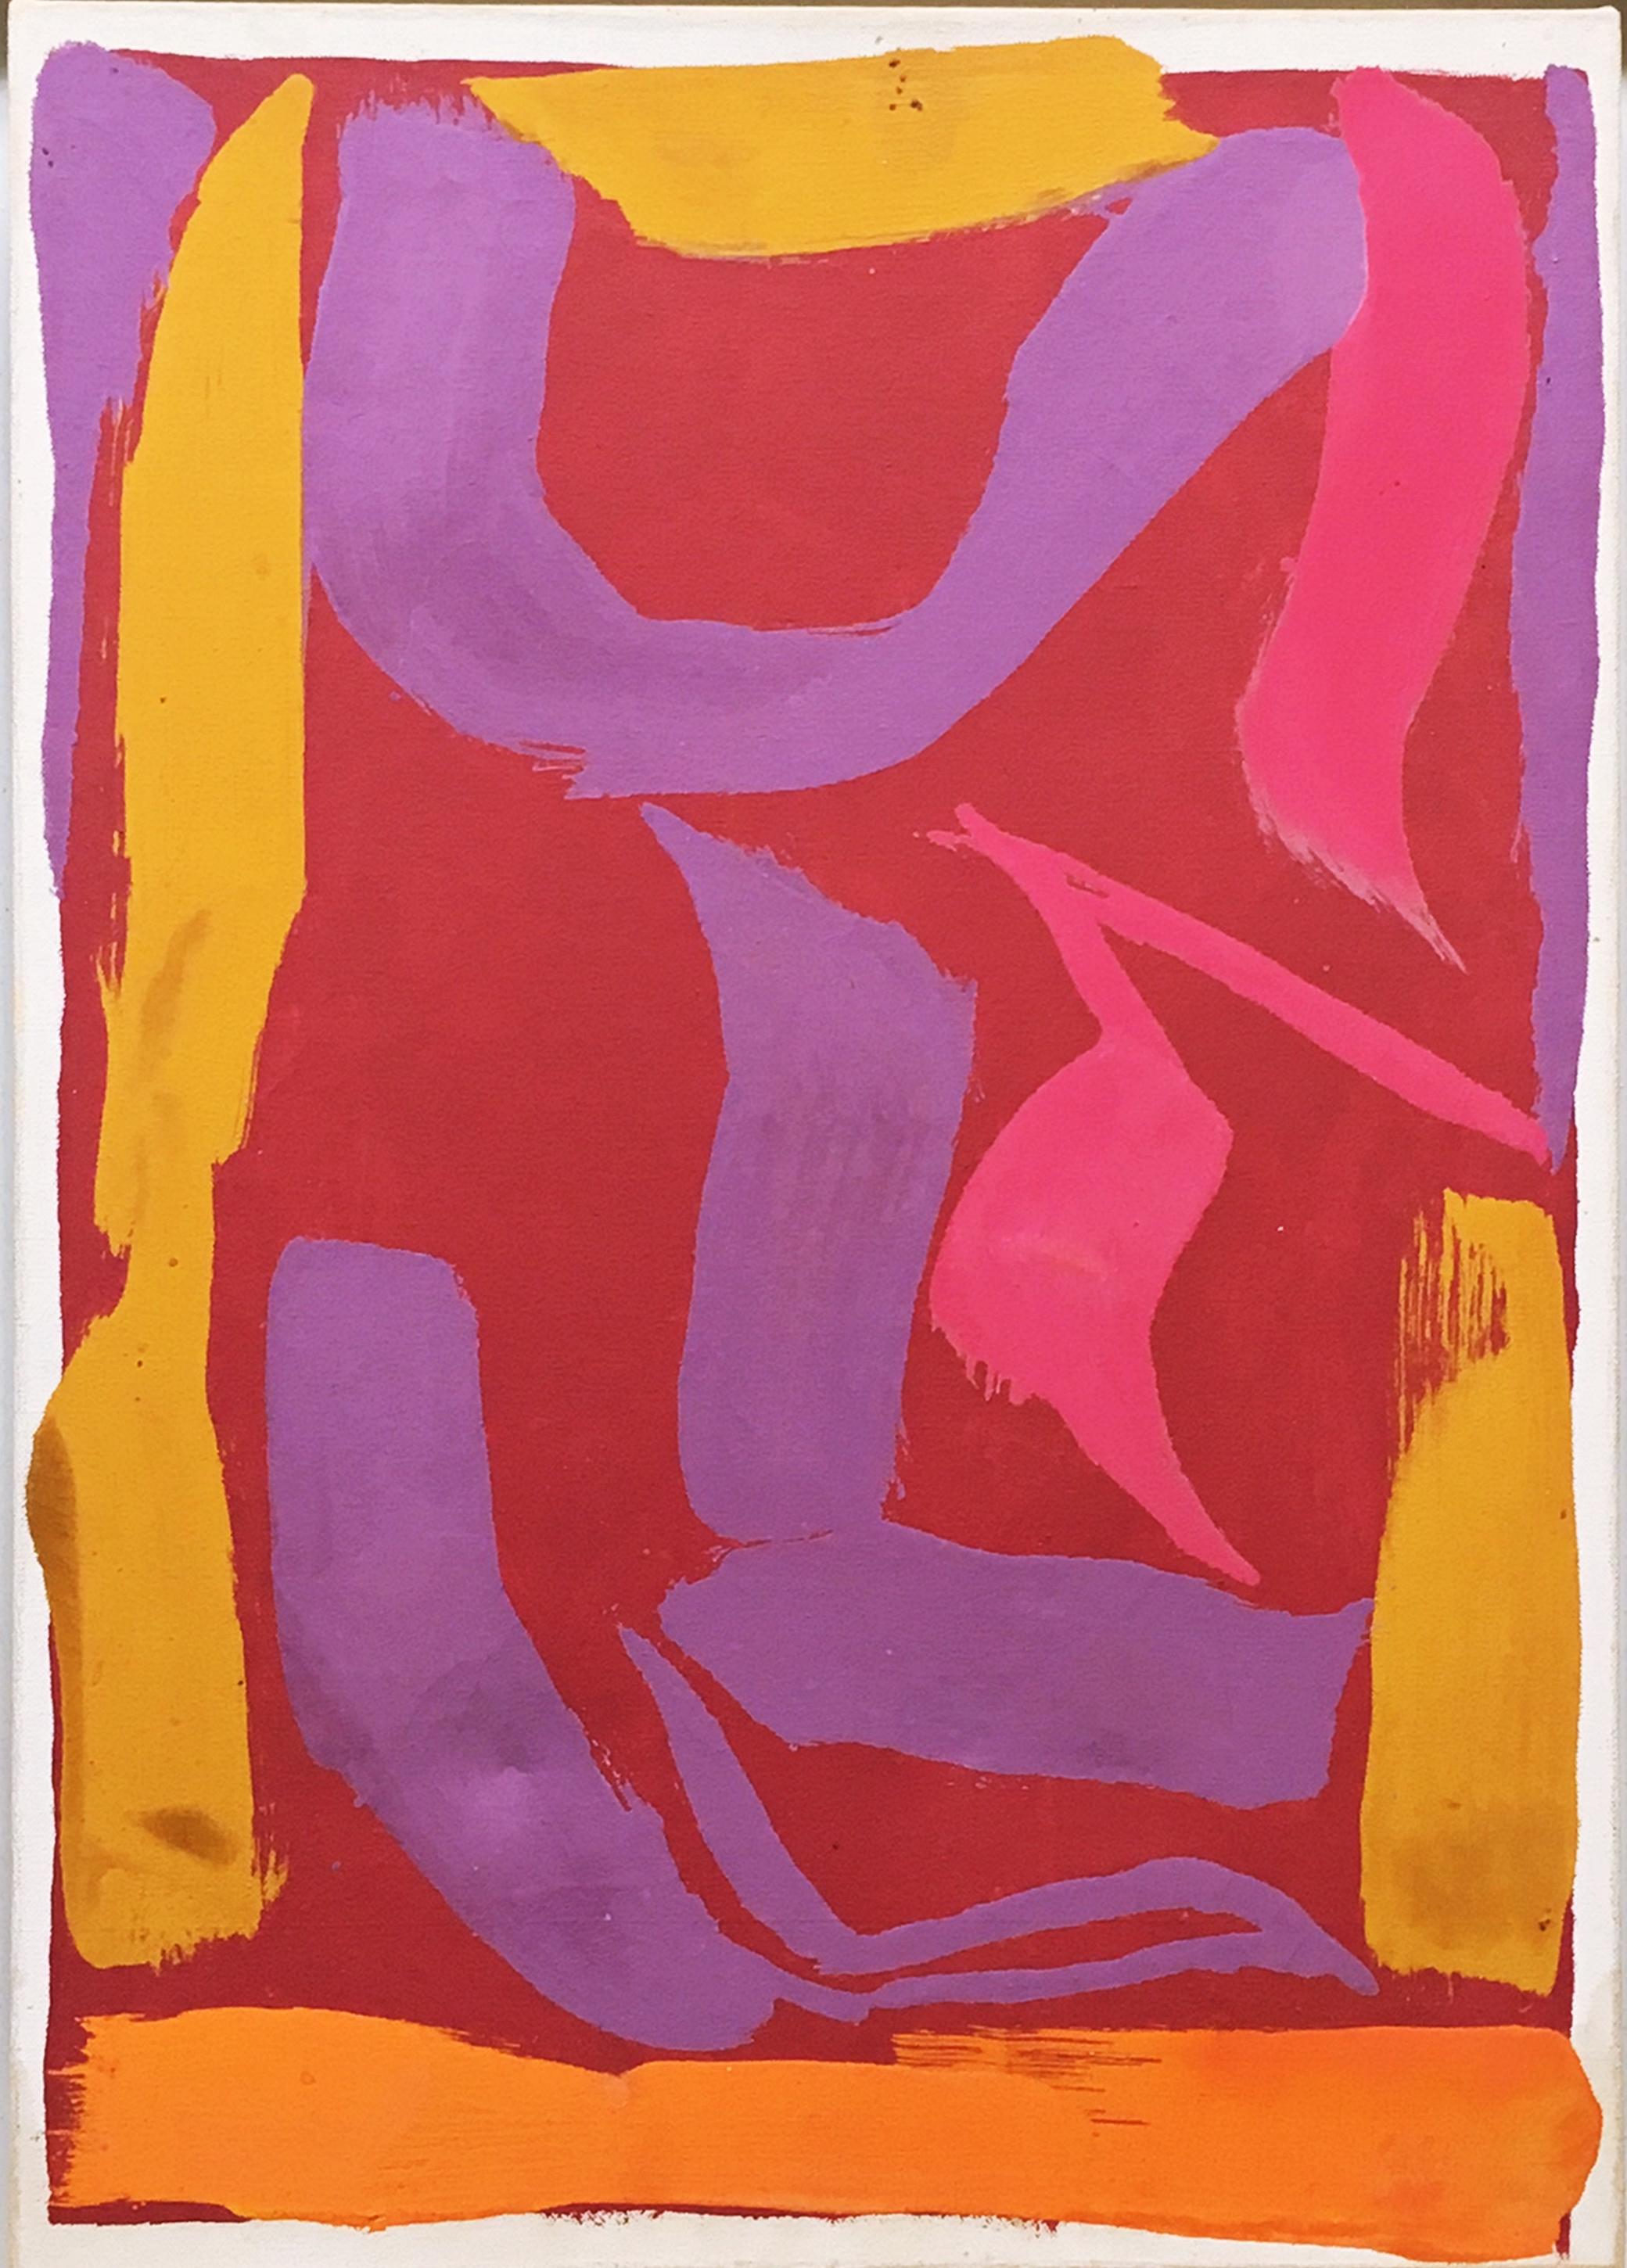 Raymond Parker
Peinture expressionniste abstraite sans titre, 1974
Acrylique sur toile (avec l'étiquette originale de la galerie Fischbach au dos du cadre)
Signé à la main et daté par l'artiste au dos.
Cadre inclus
Magnifique tableau datant du